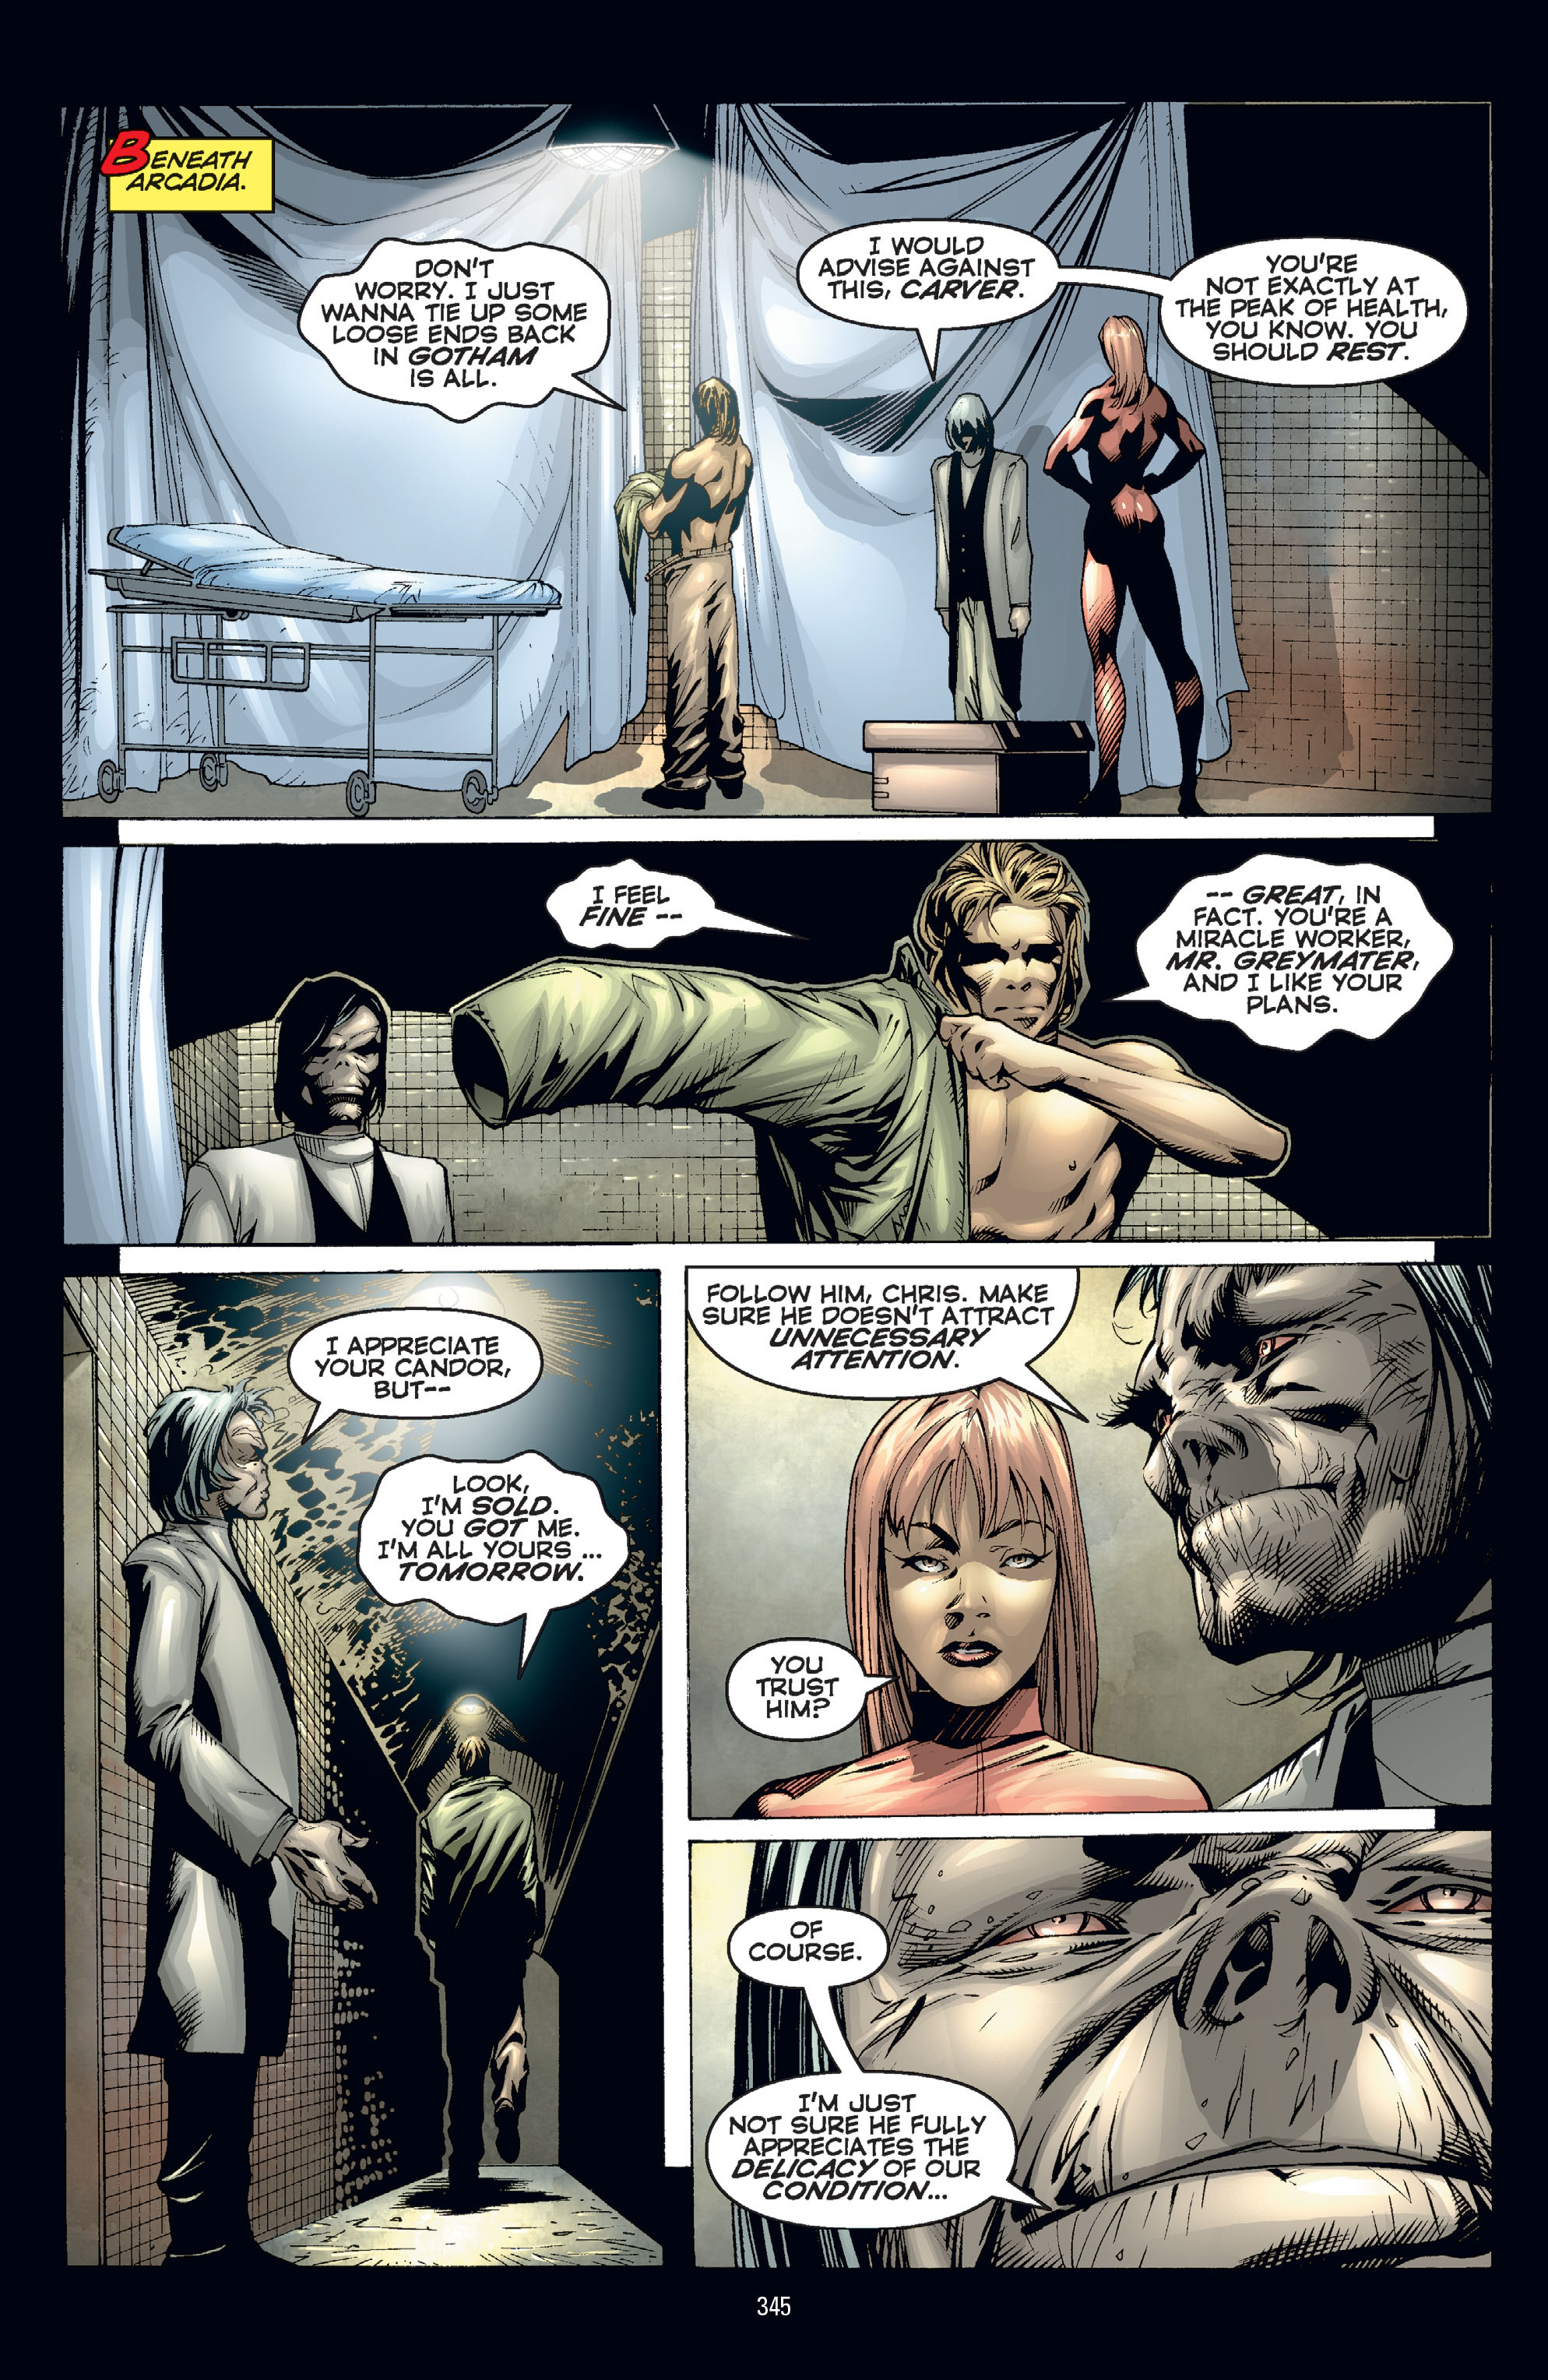 DC Comics/Dark Horse Comics: Justice League Full #1 - English 335